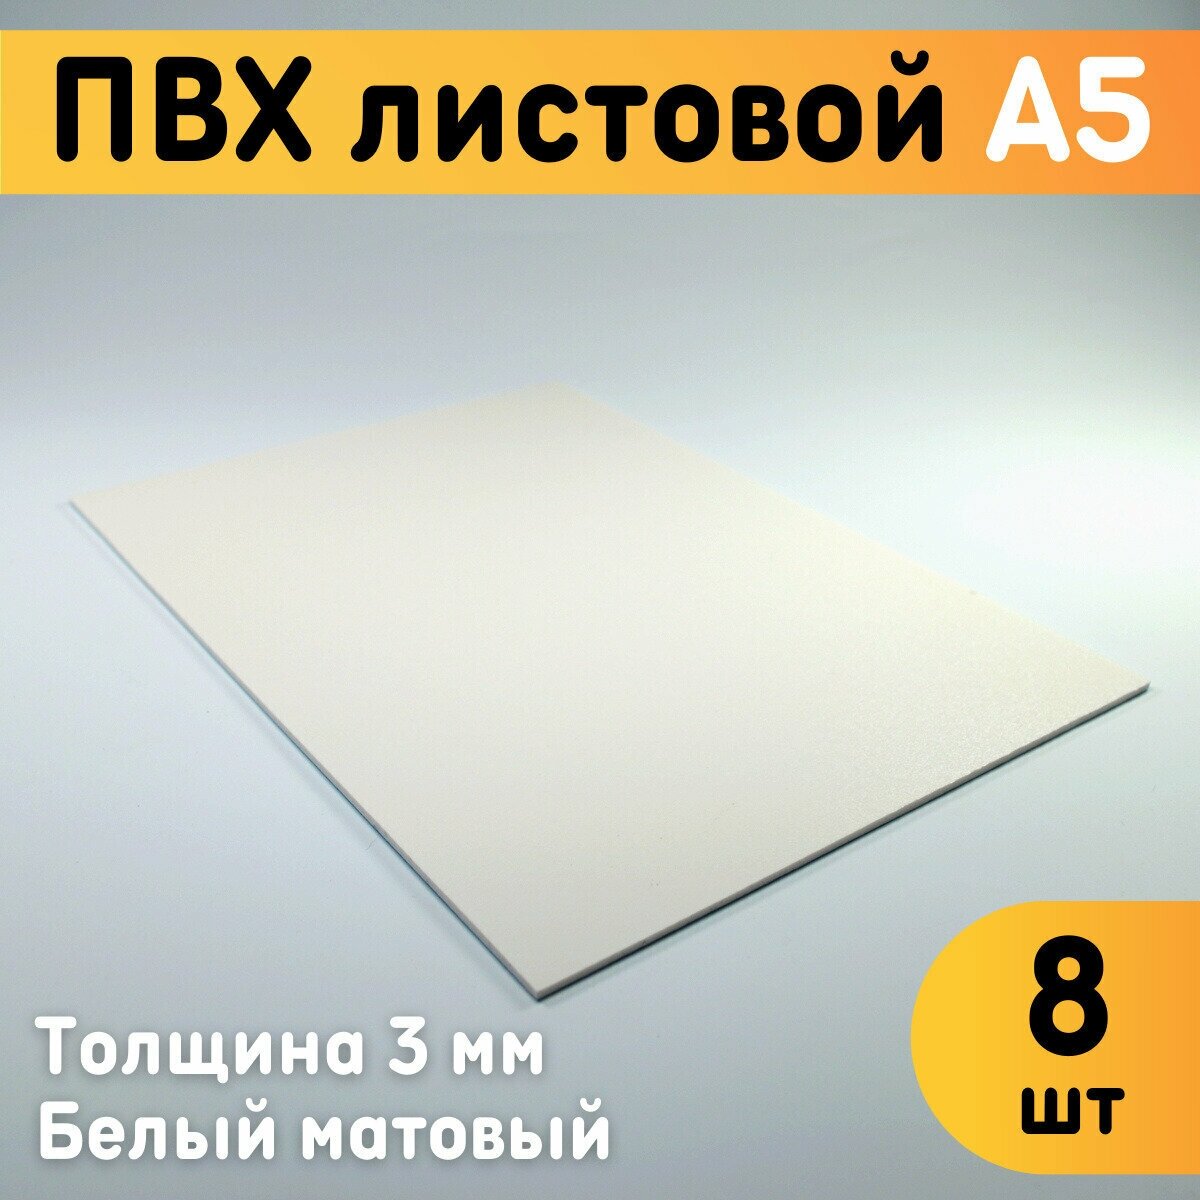 ПВХ листовой белый А5 148х210 мм толщина 3 мм комплект 8 шт. / Белый пластик / Модельный пластик ПВХ